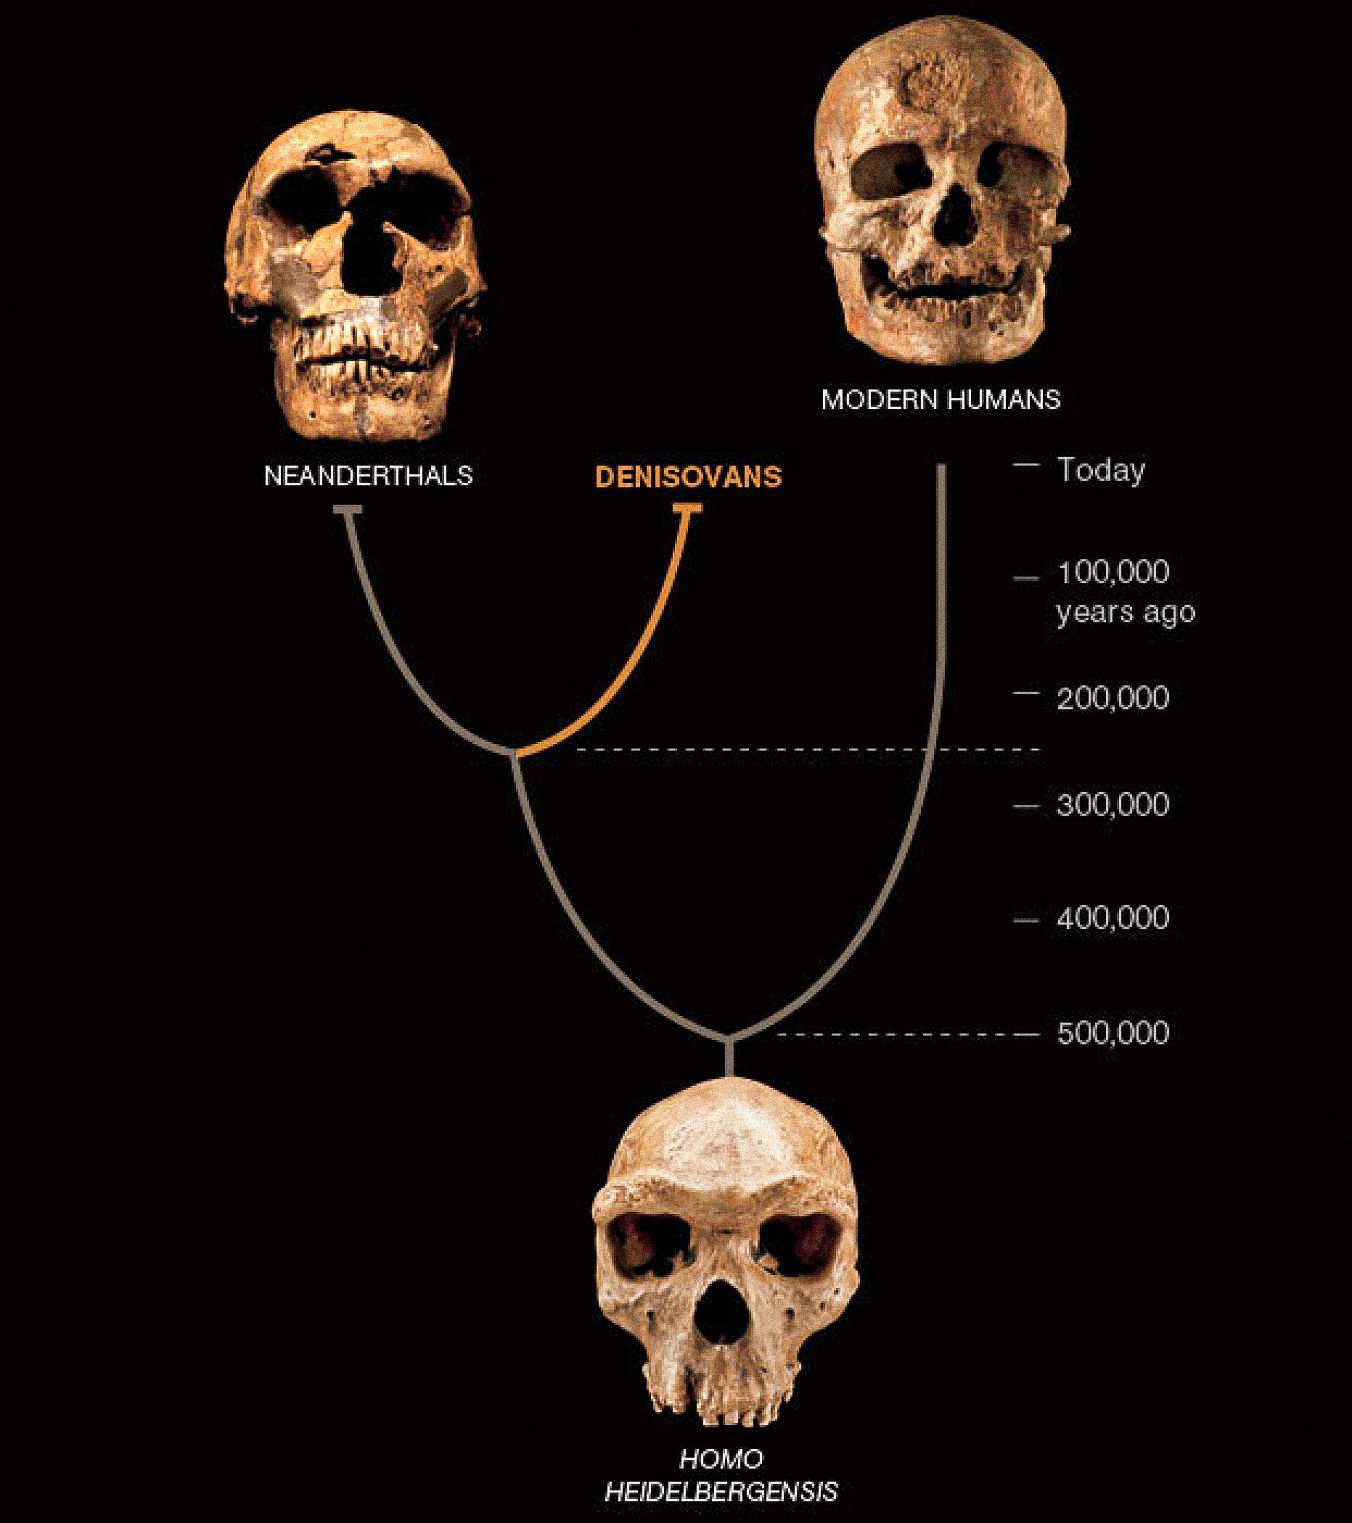 Zdá se, že třetí druh lidí, nazývaný denisovani, koexistoval v Asii s neandrtálci a raně moderními lidmi. Poslední dva jsou známy z četných fosilií a artefaktů. Denisovani jsou zatím definováni pouze DNA z jednoho kostního čipu a dvou zubů – ale odhaluje nový obrat v lidském příběhu.